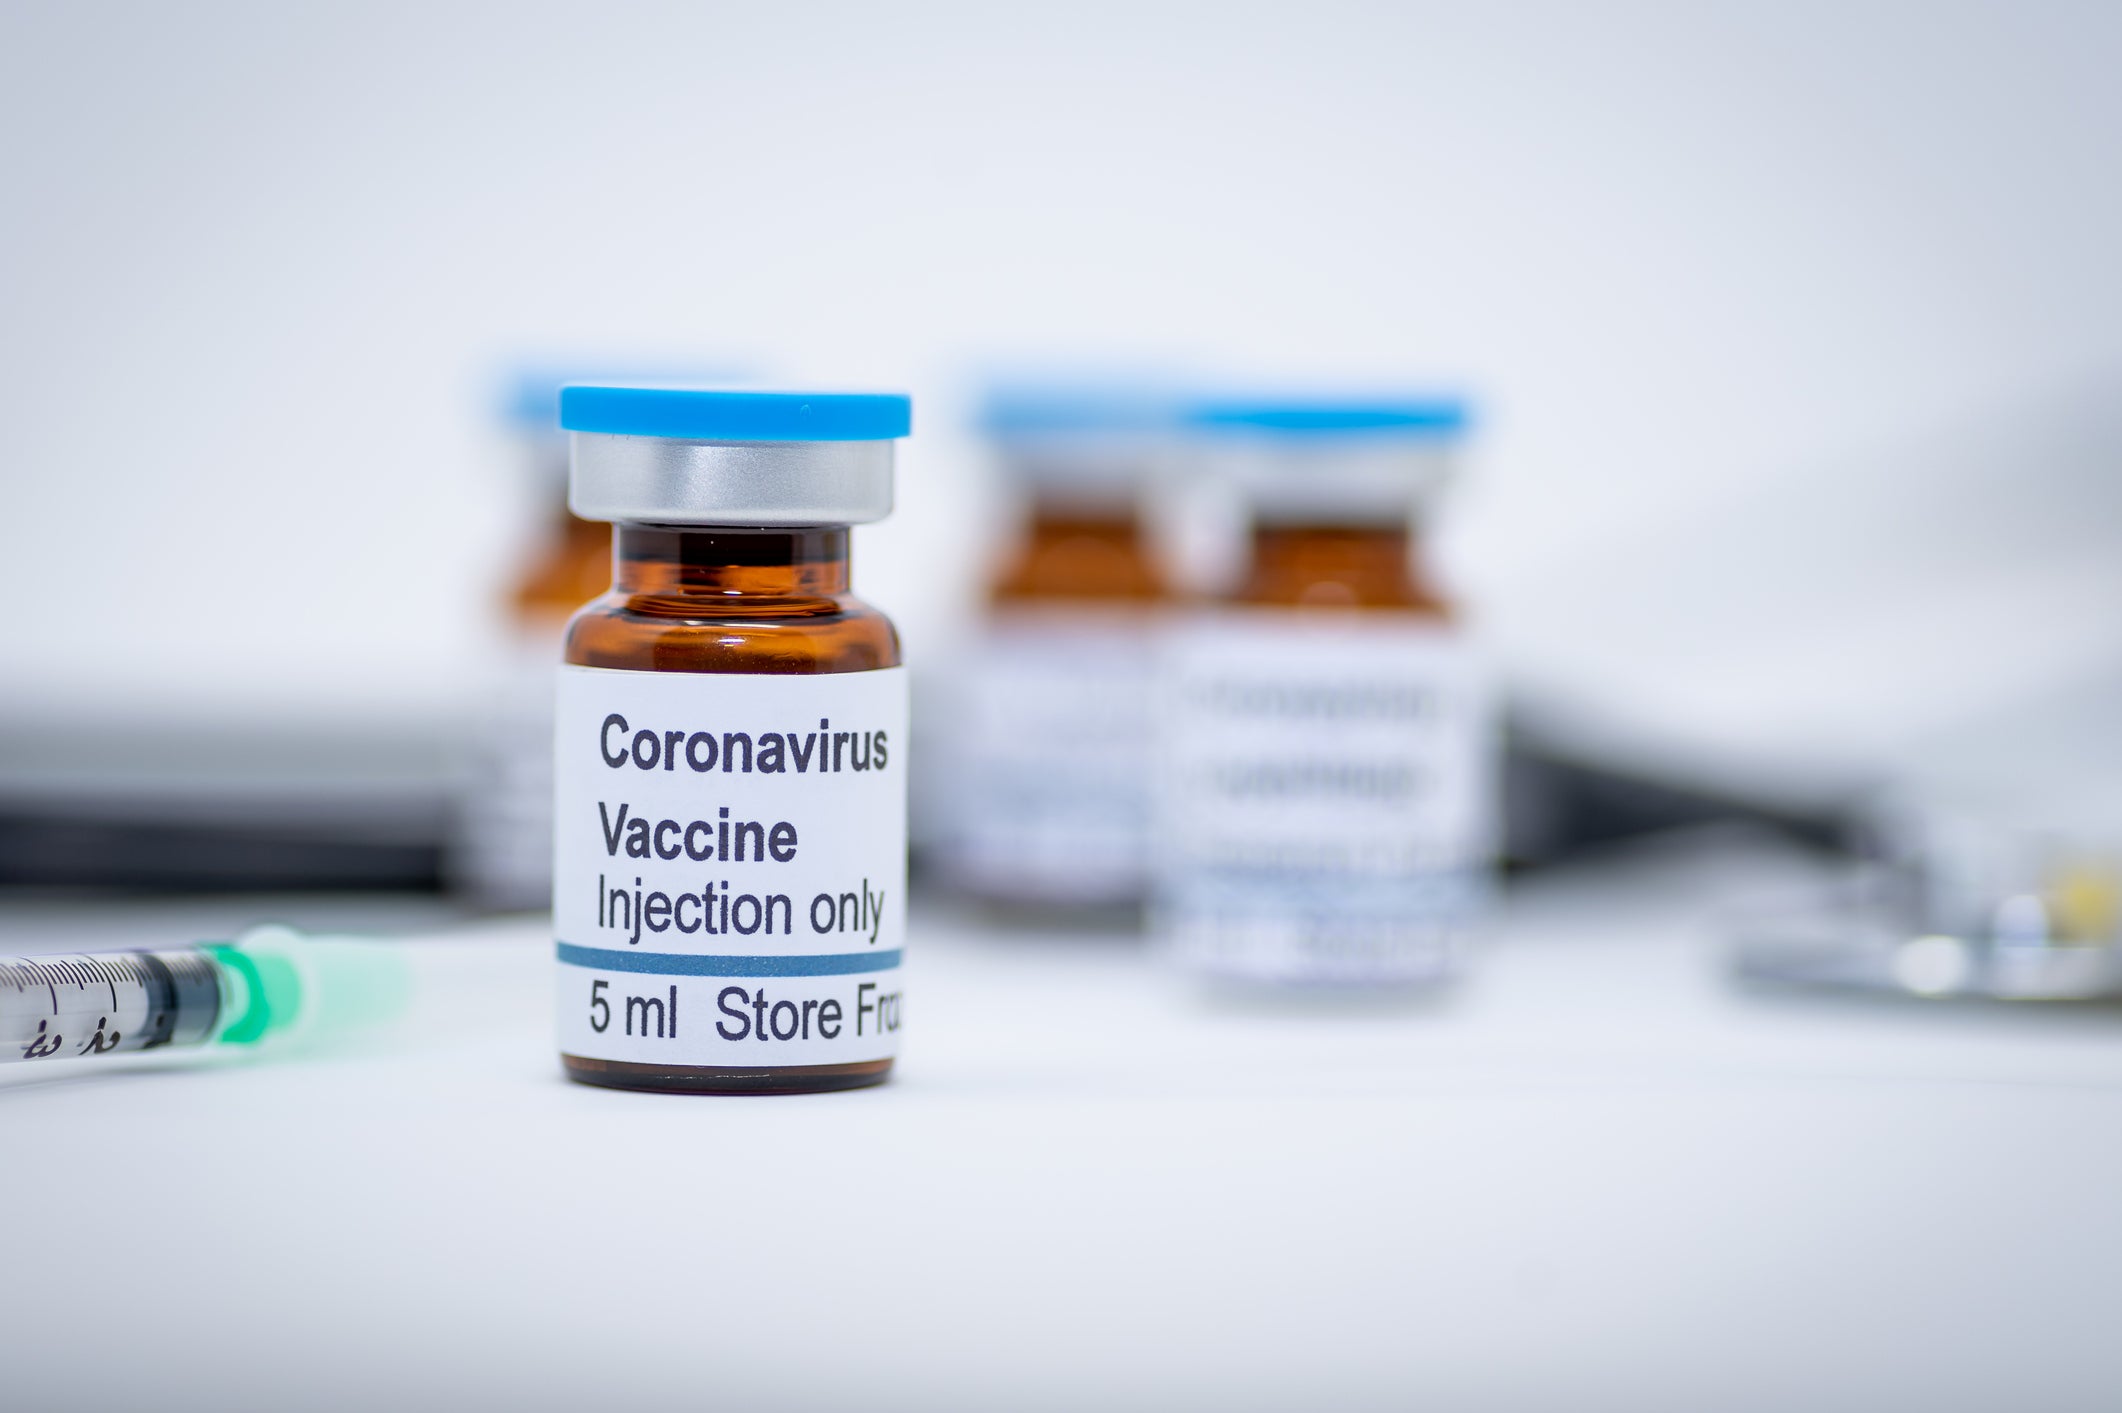 moderna vaccine fortune coronavirus initial